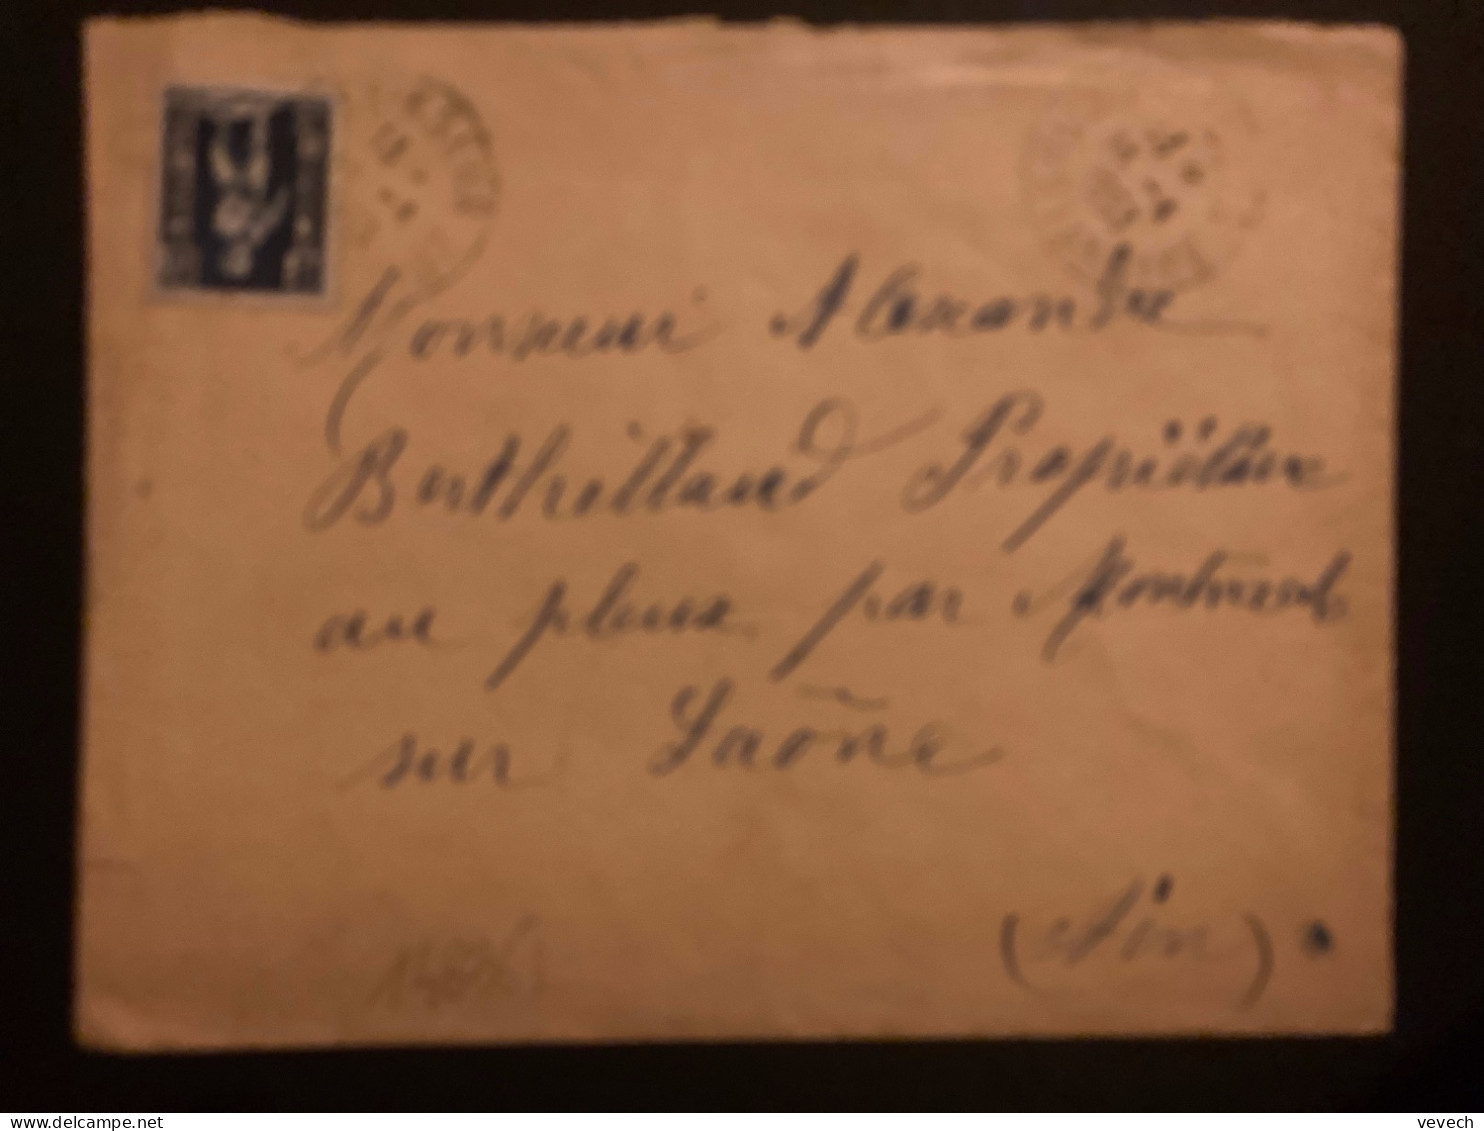 LETTRE Pour La FRANCE TP AIGLON 5F OBL.15-4 1953 EL-KSEUR CONSTANTINE - Cartas & Documentos